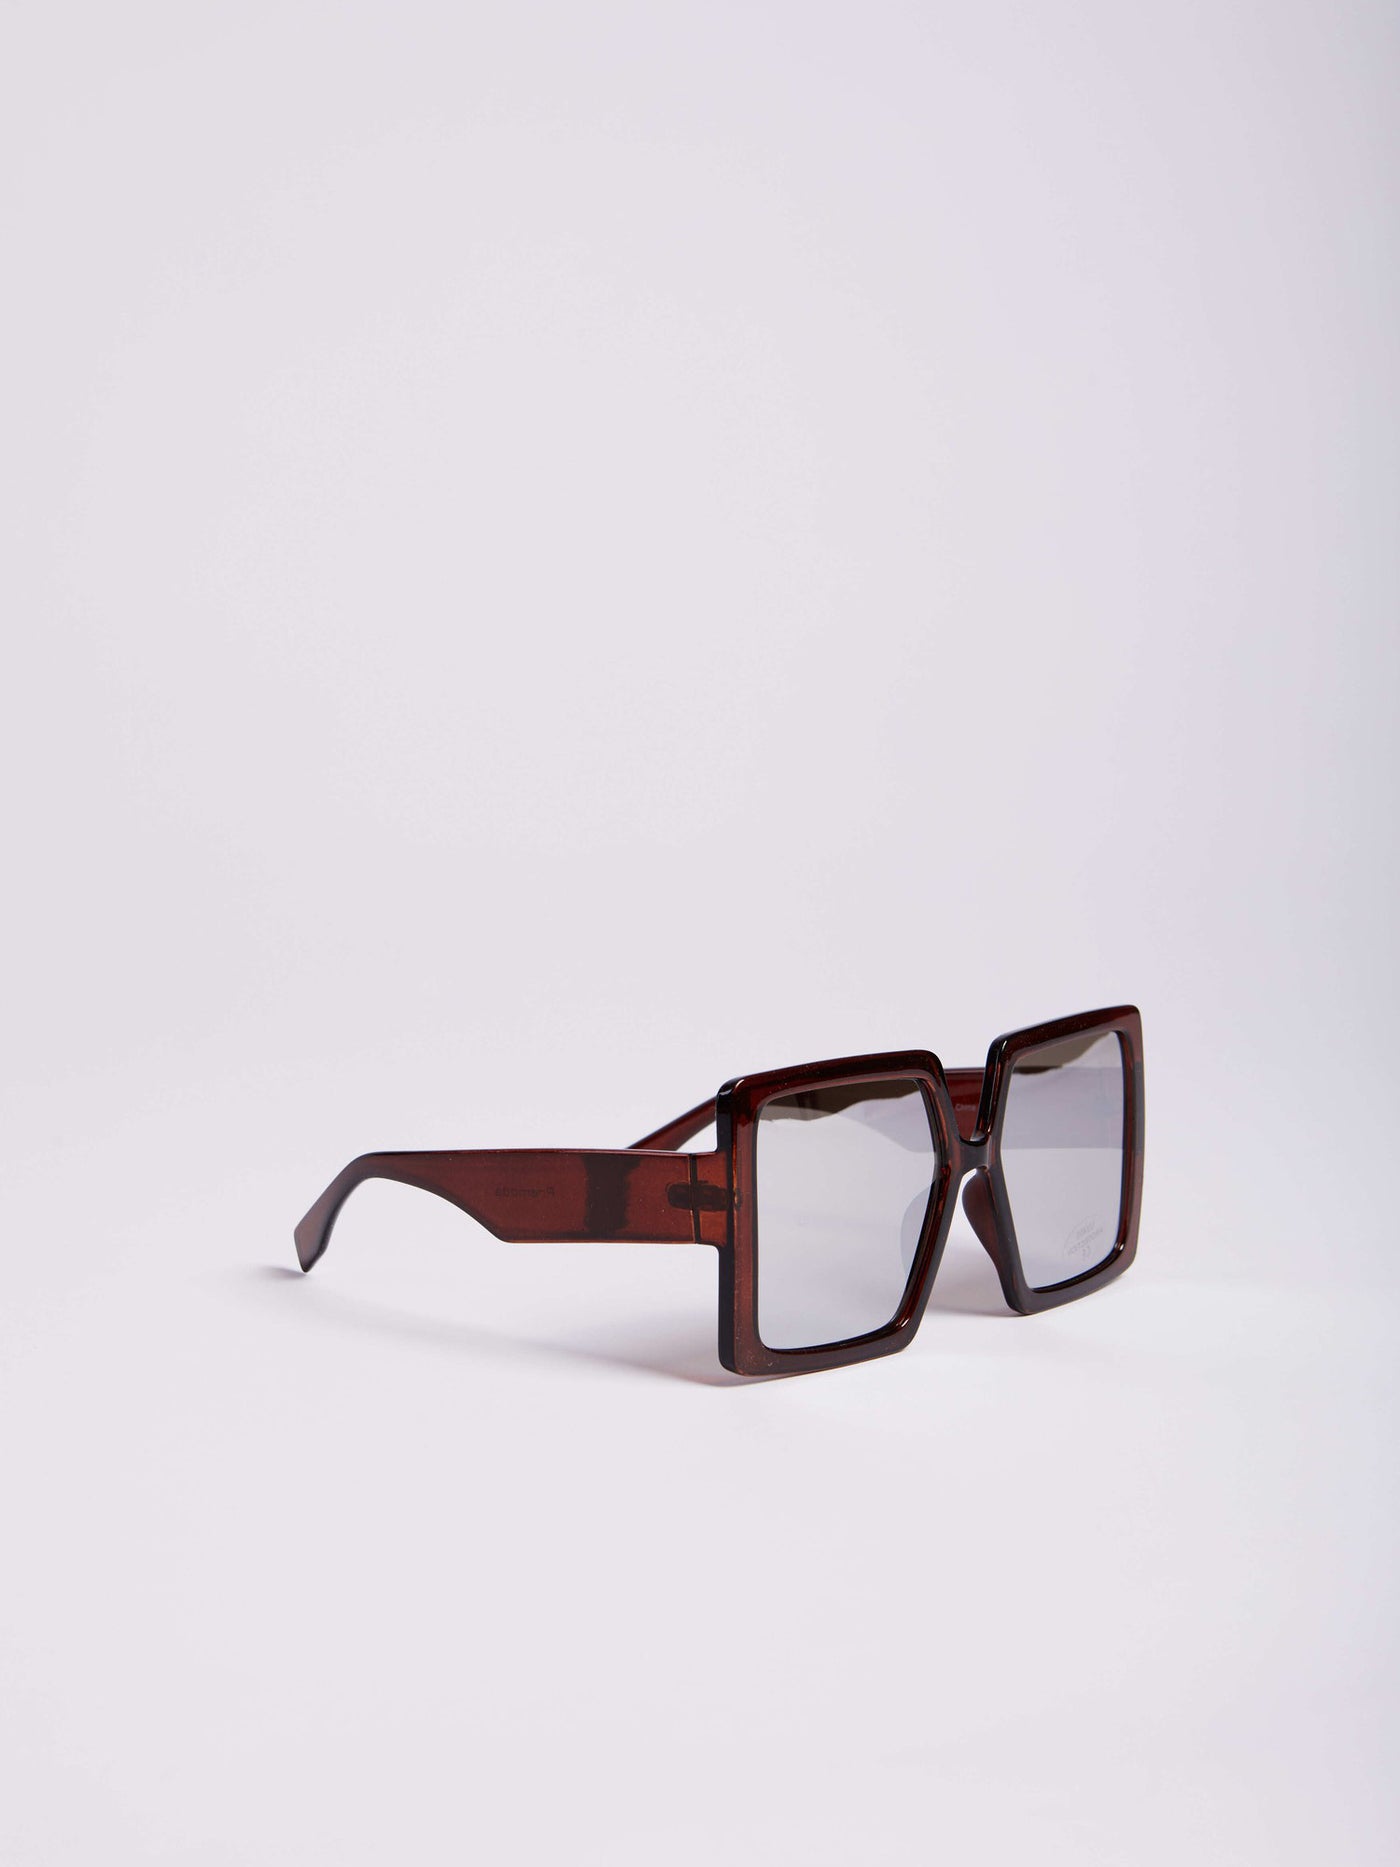 Sunglasses - Squared Lenses